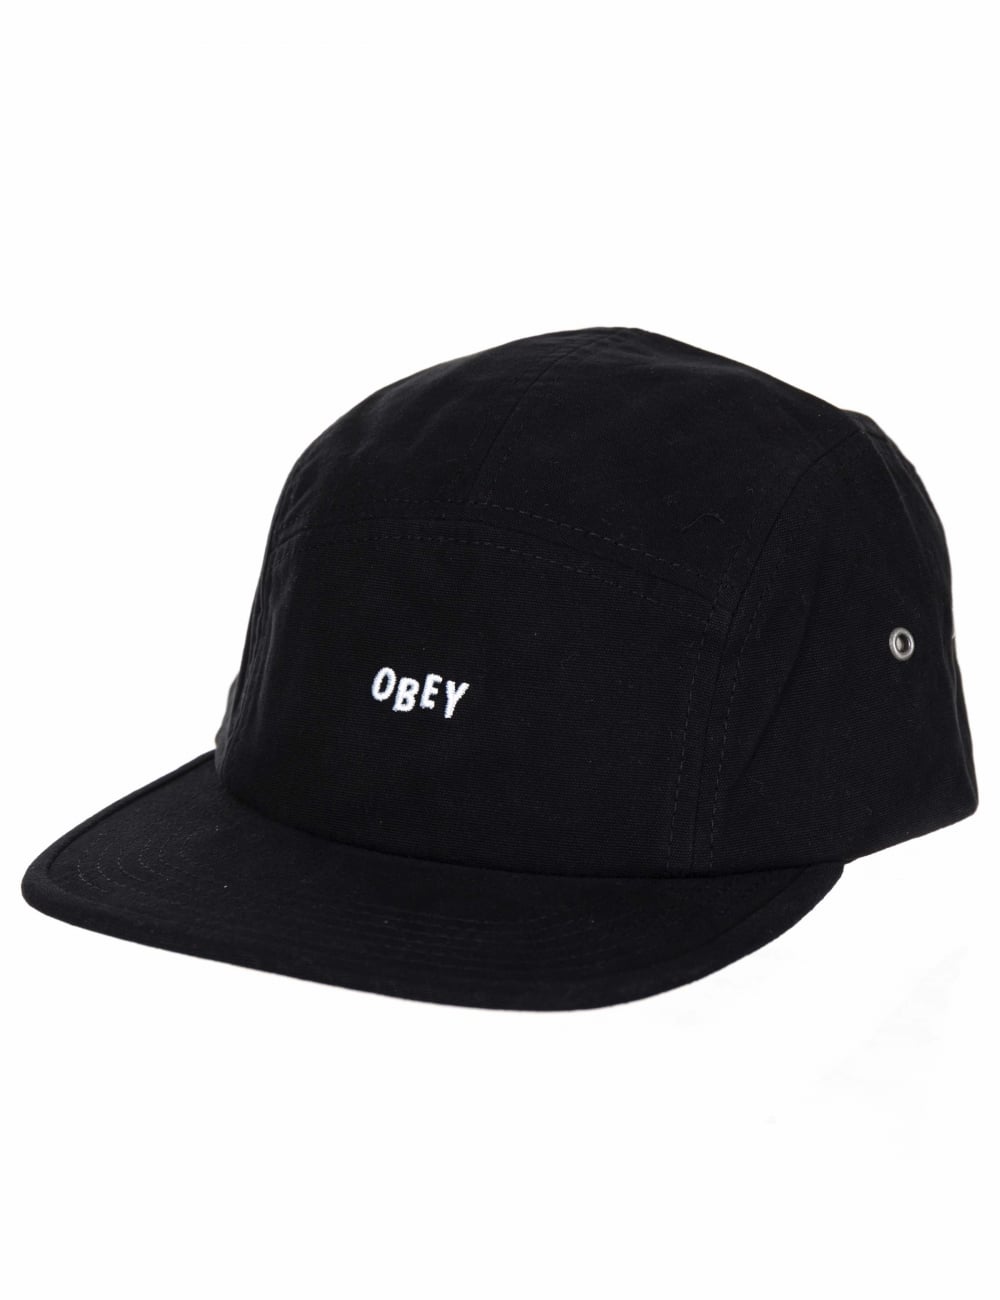 Black Obey Logo - LogoDix